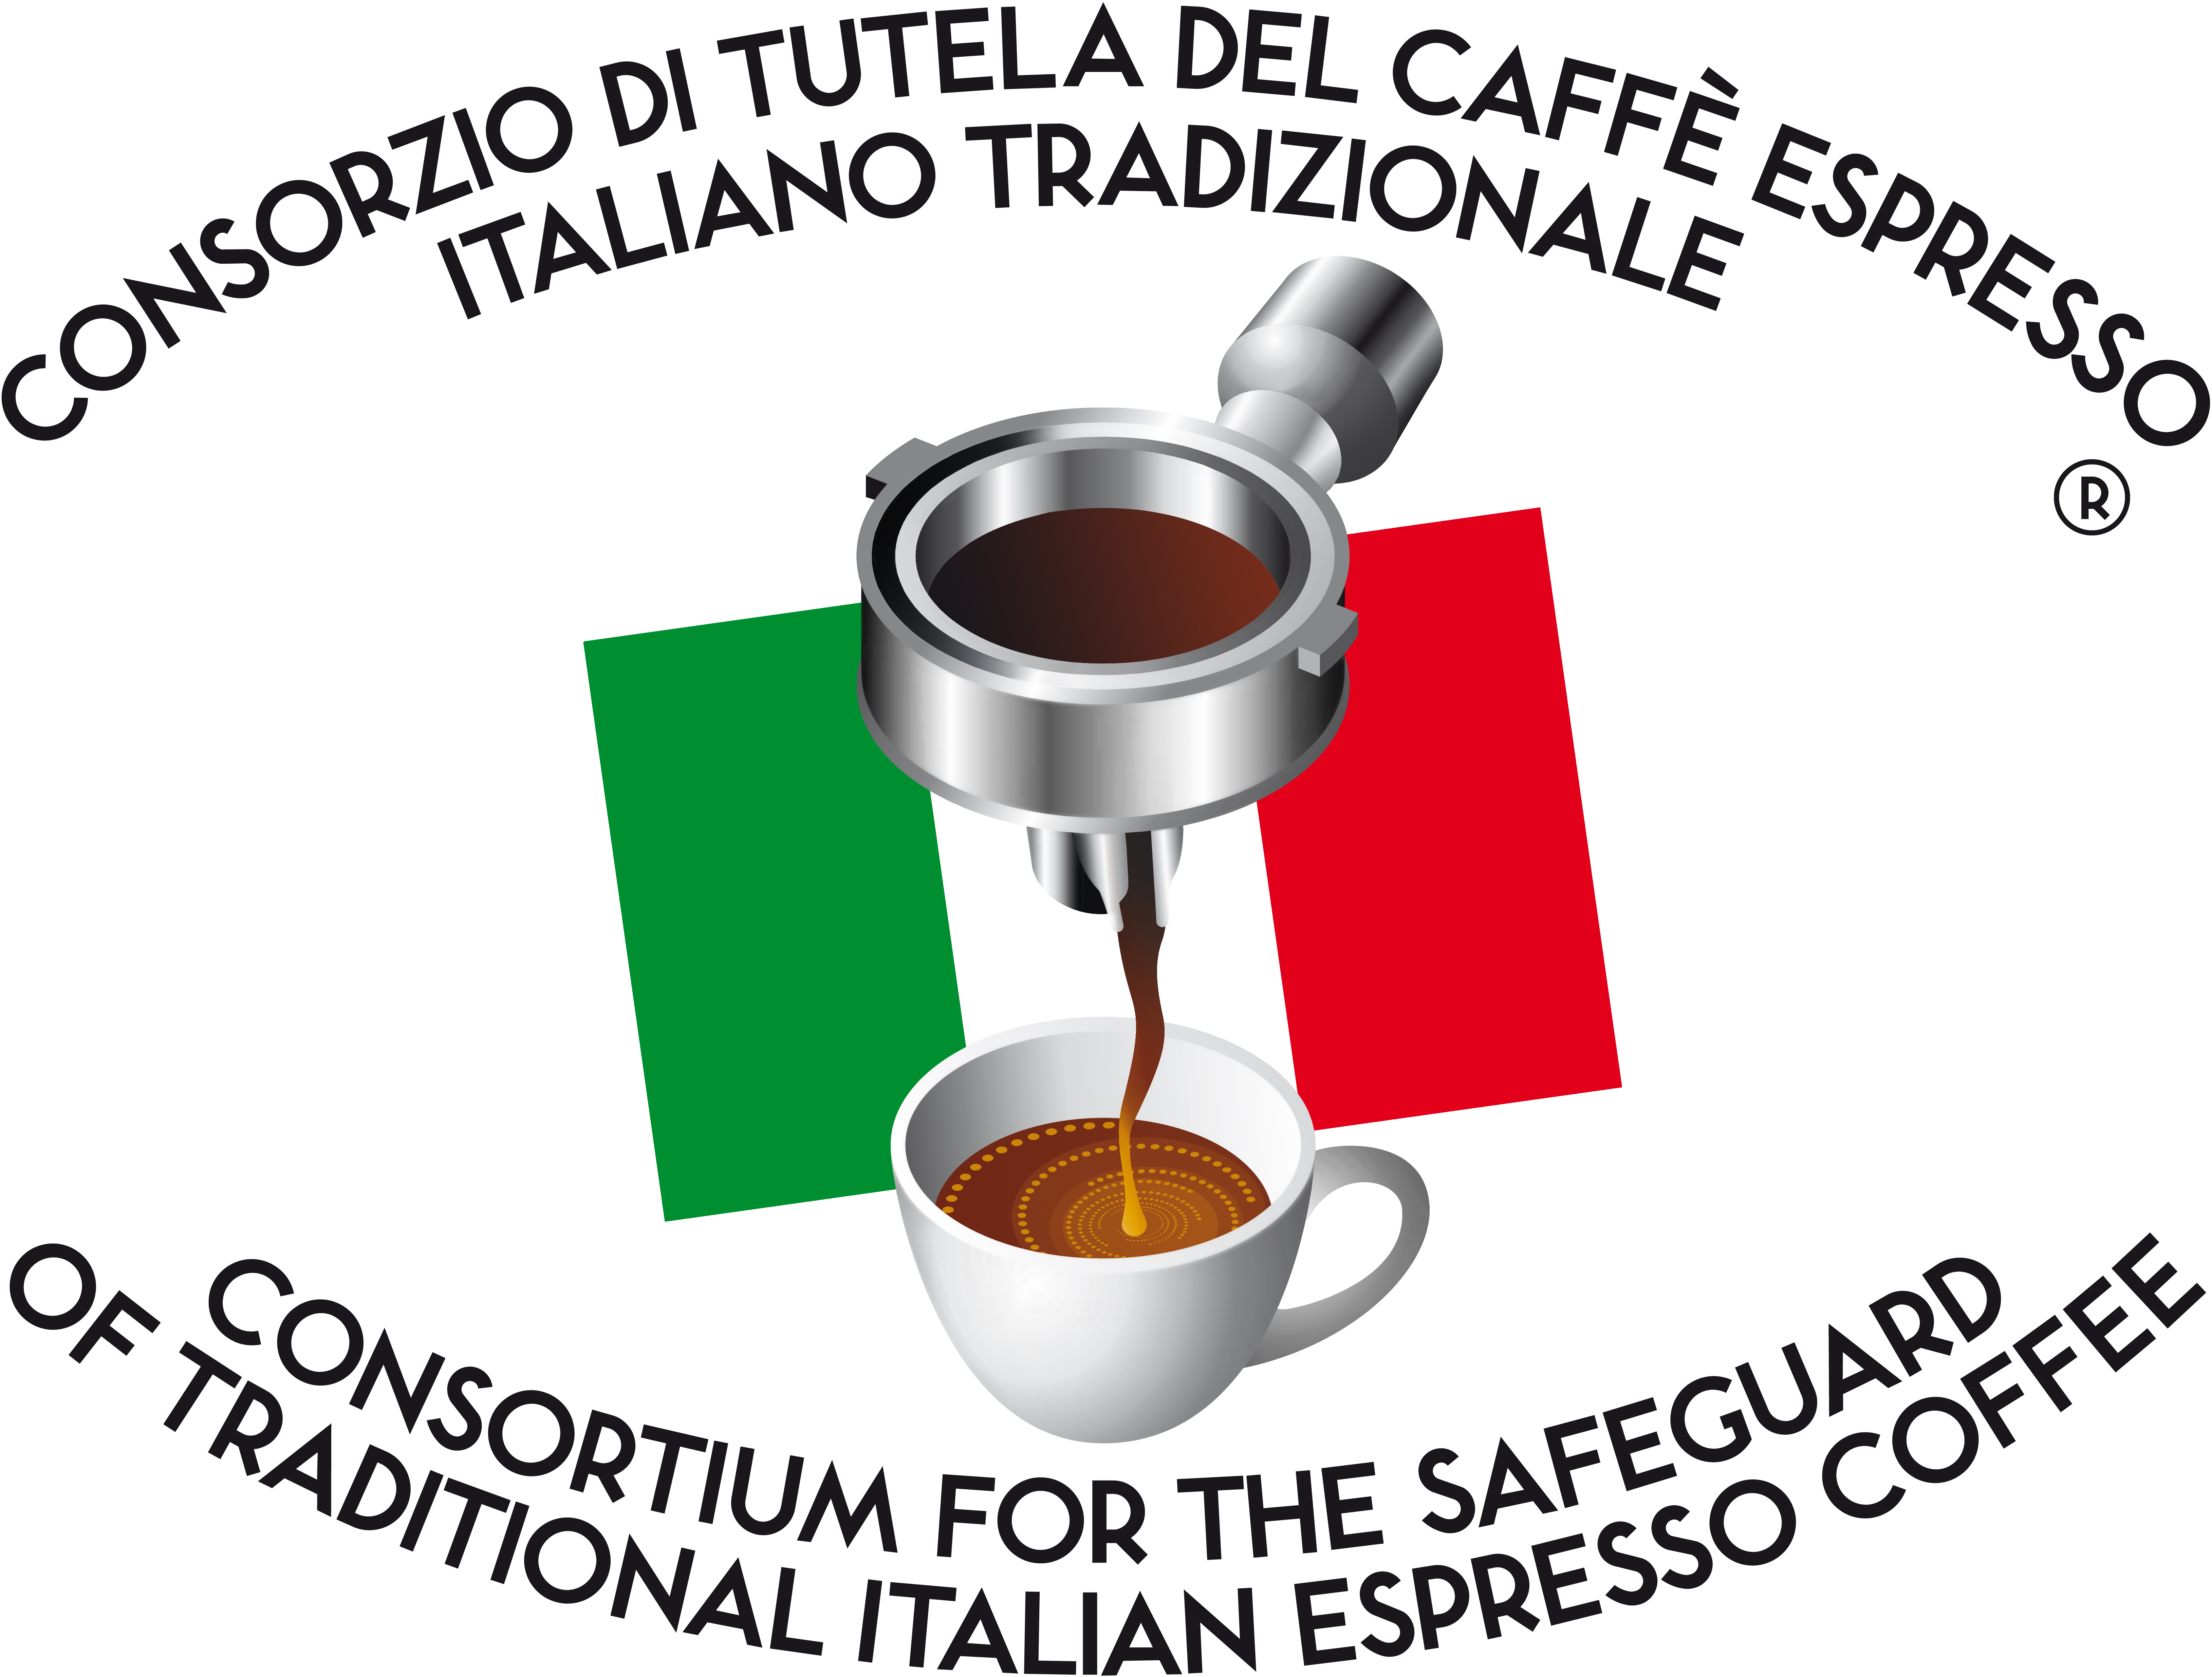 CONSORZIO DI TUTELA DEL CAFFÈ ESPRESSO ITALIANO TRADIZIONALE